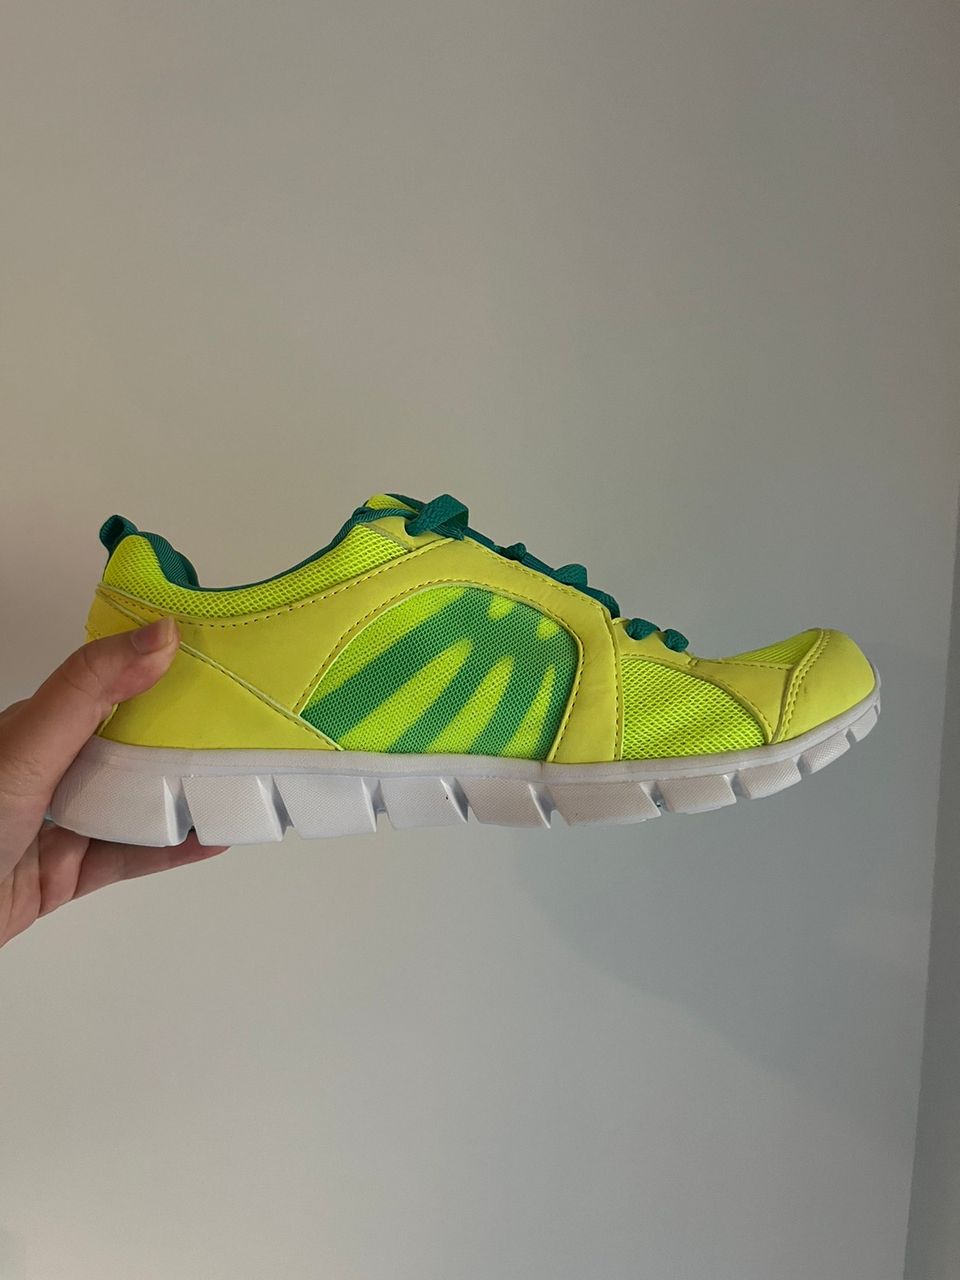 Käyttämättömät neonvihreät kengät